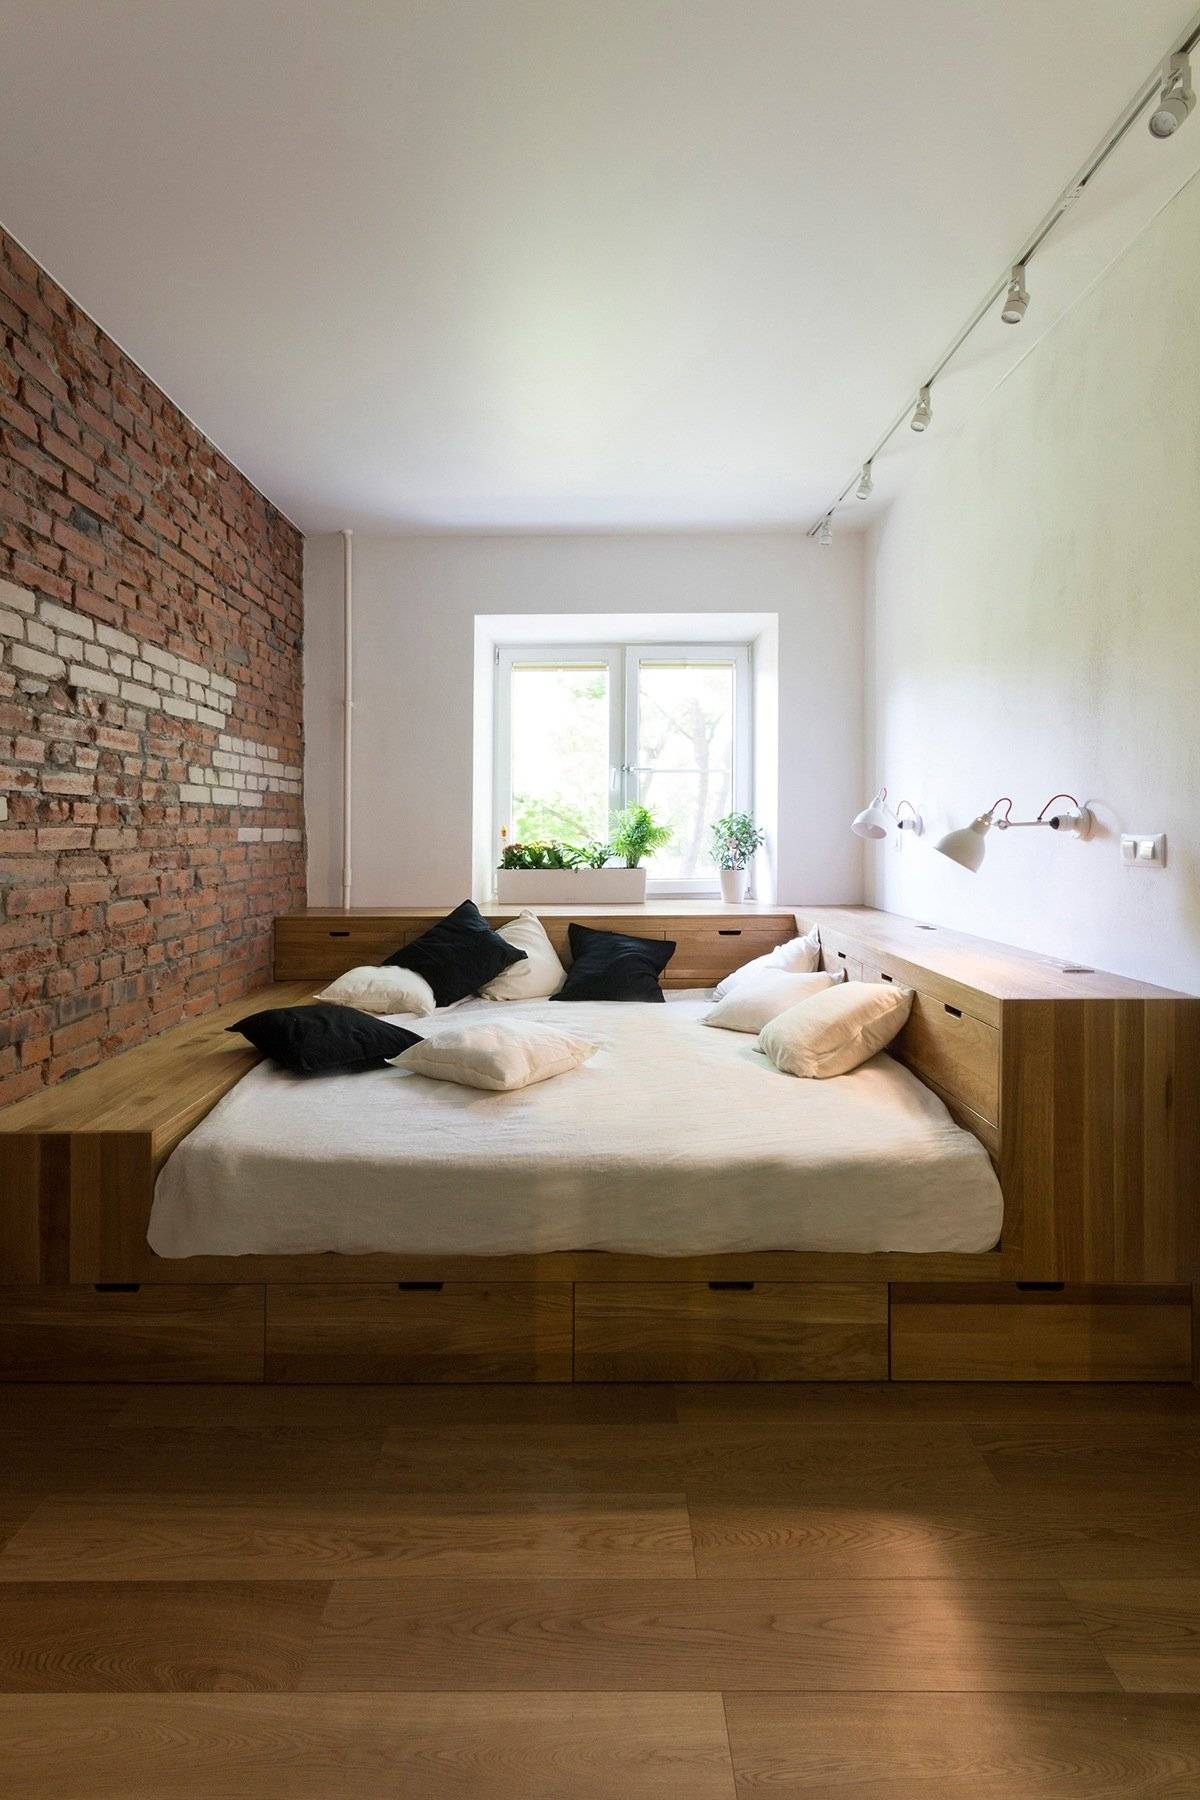 Blok yatak odası tasarımı küçük lüks yatak odası dekorasyonu